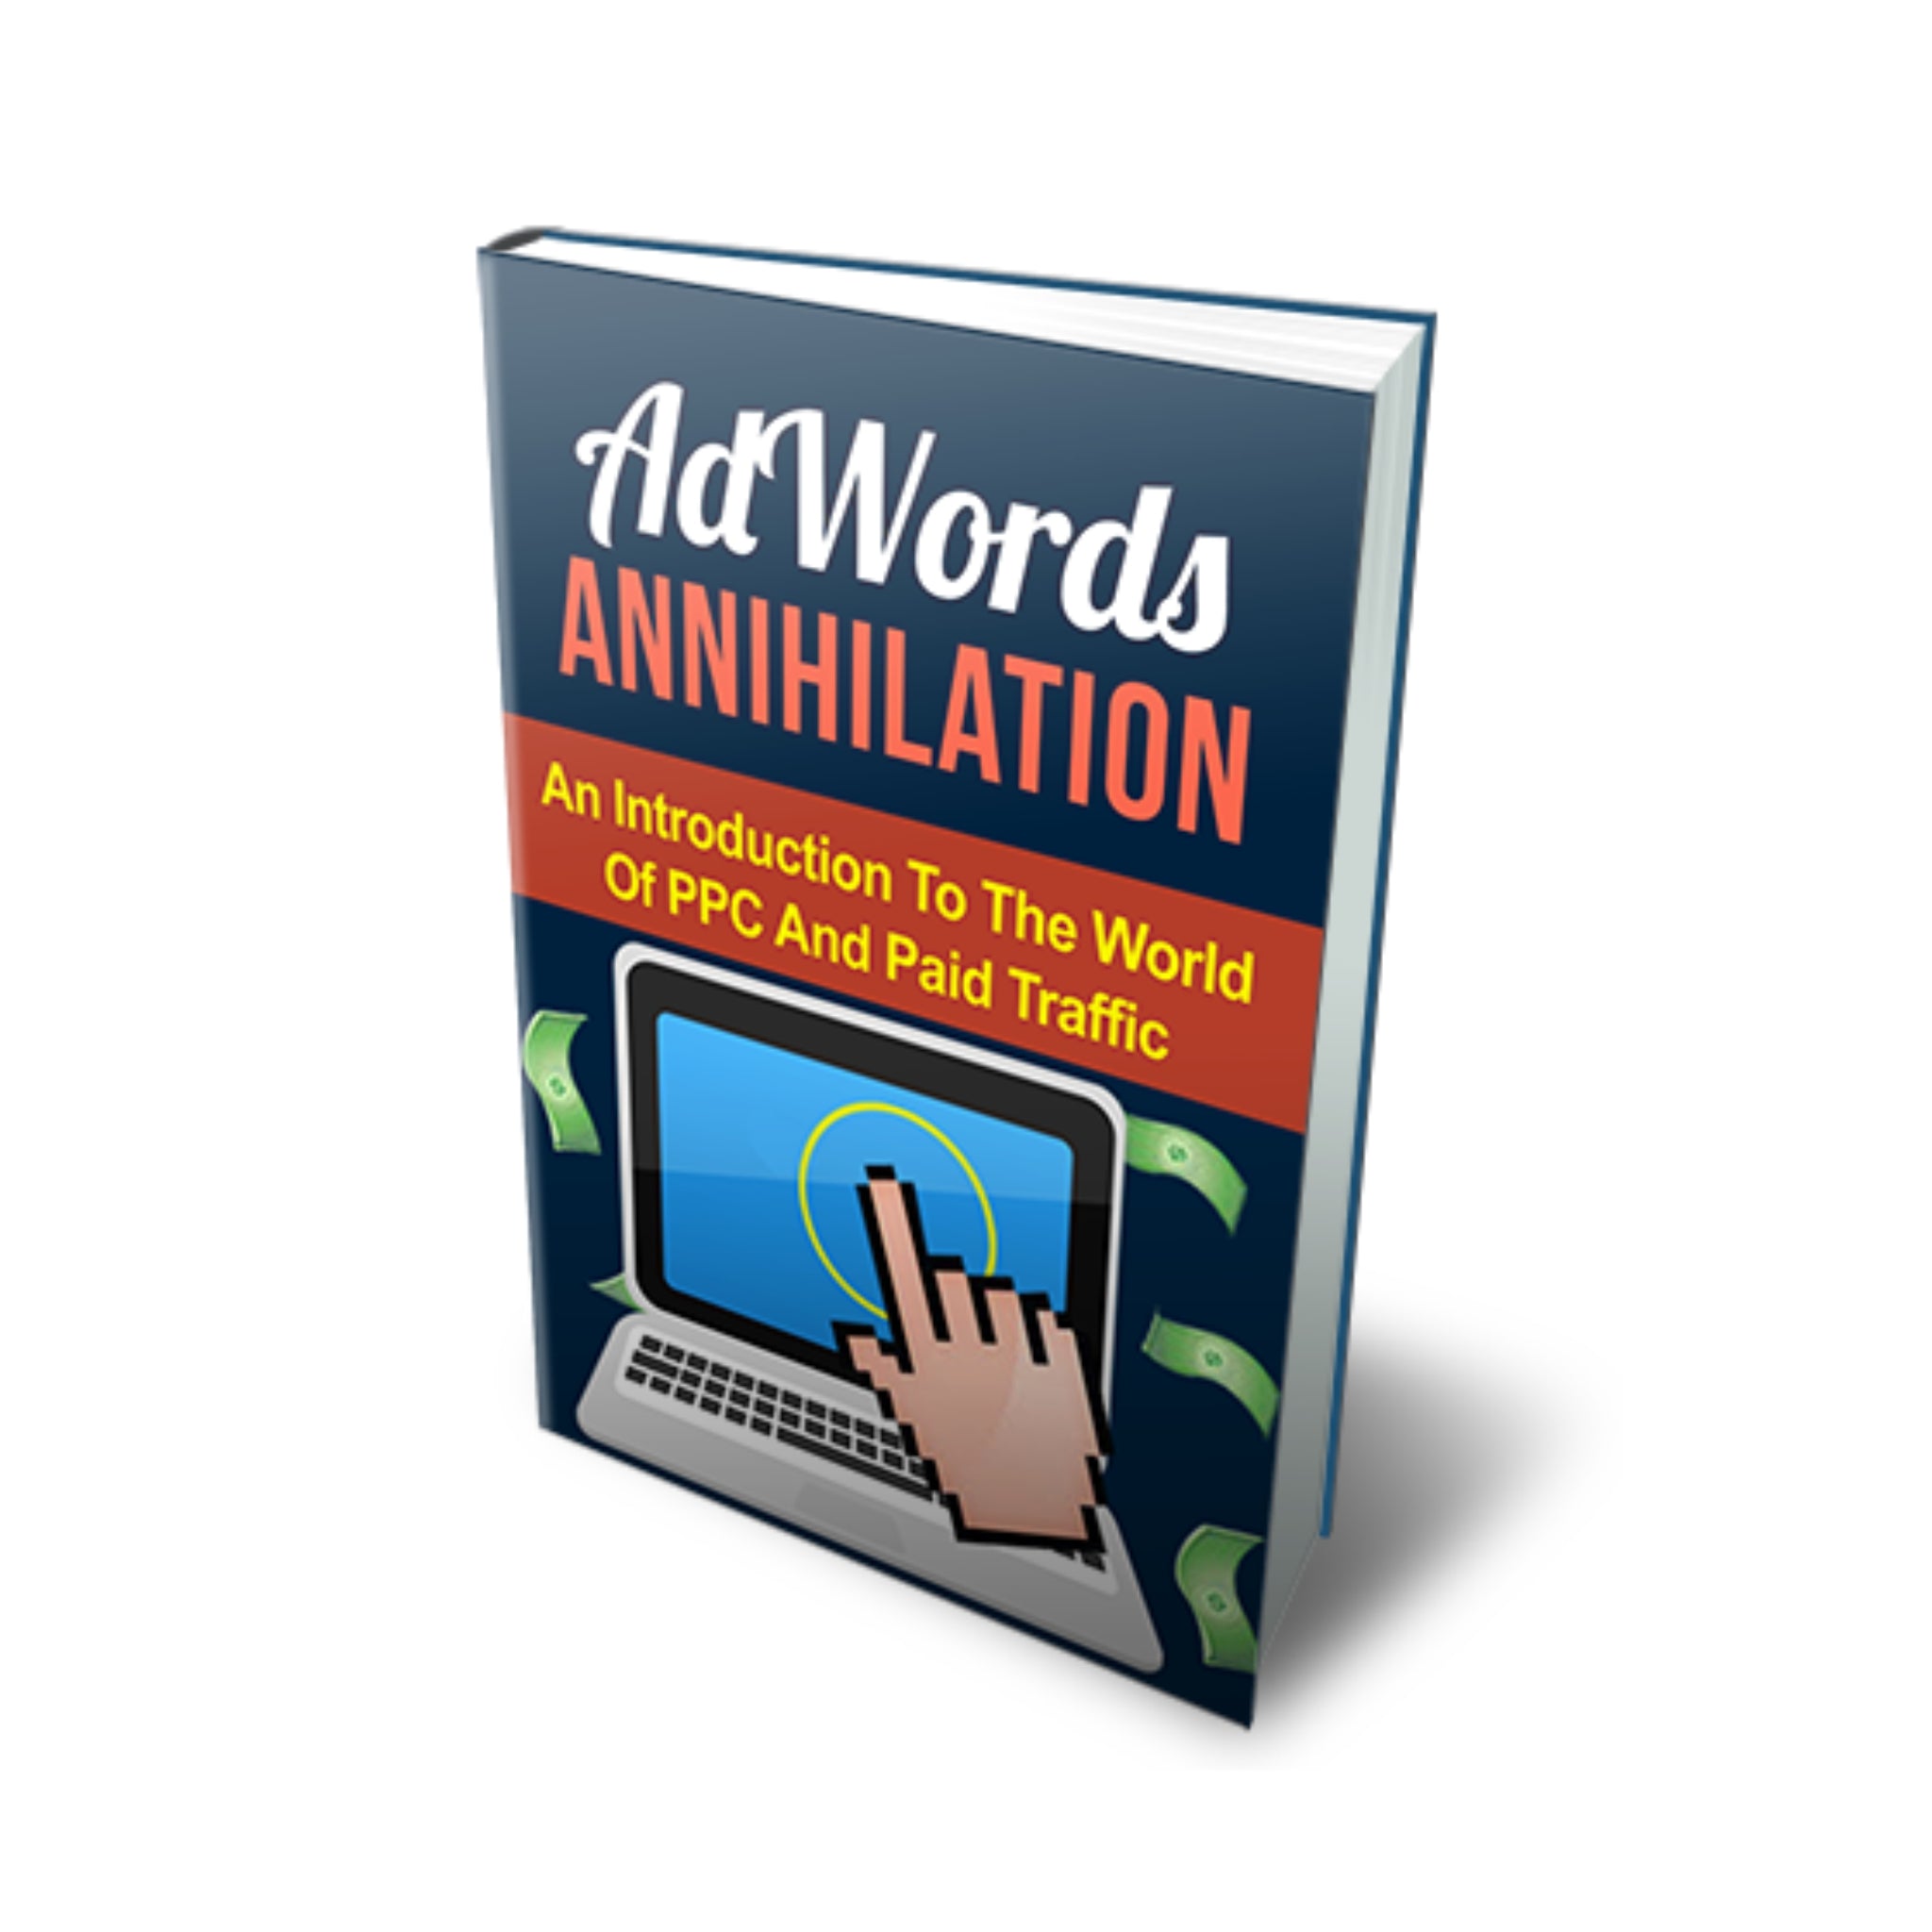 AdWords Annihilation Ebook